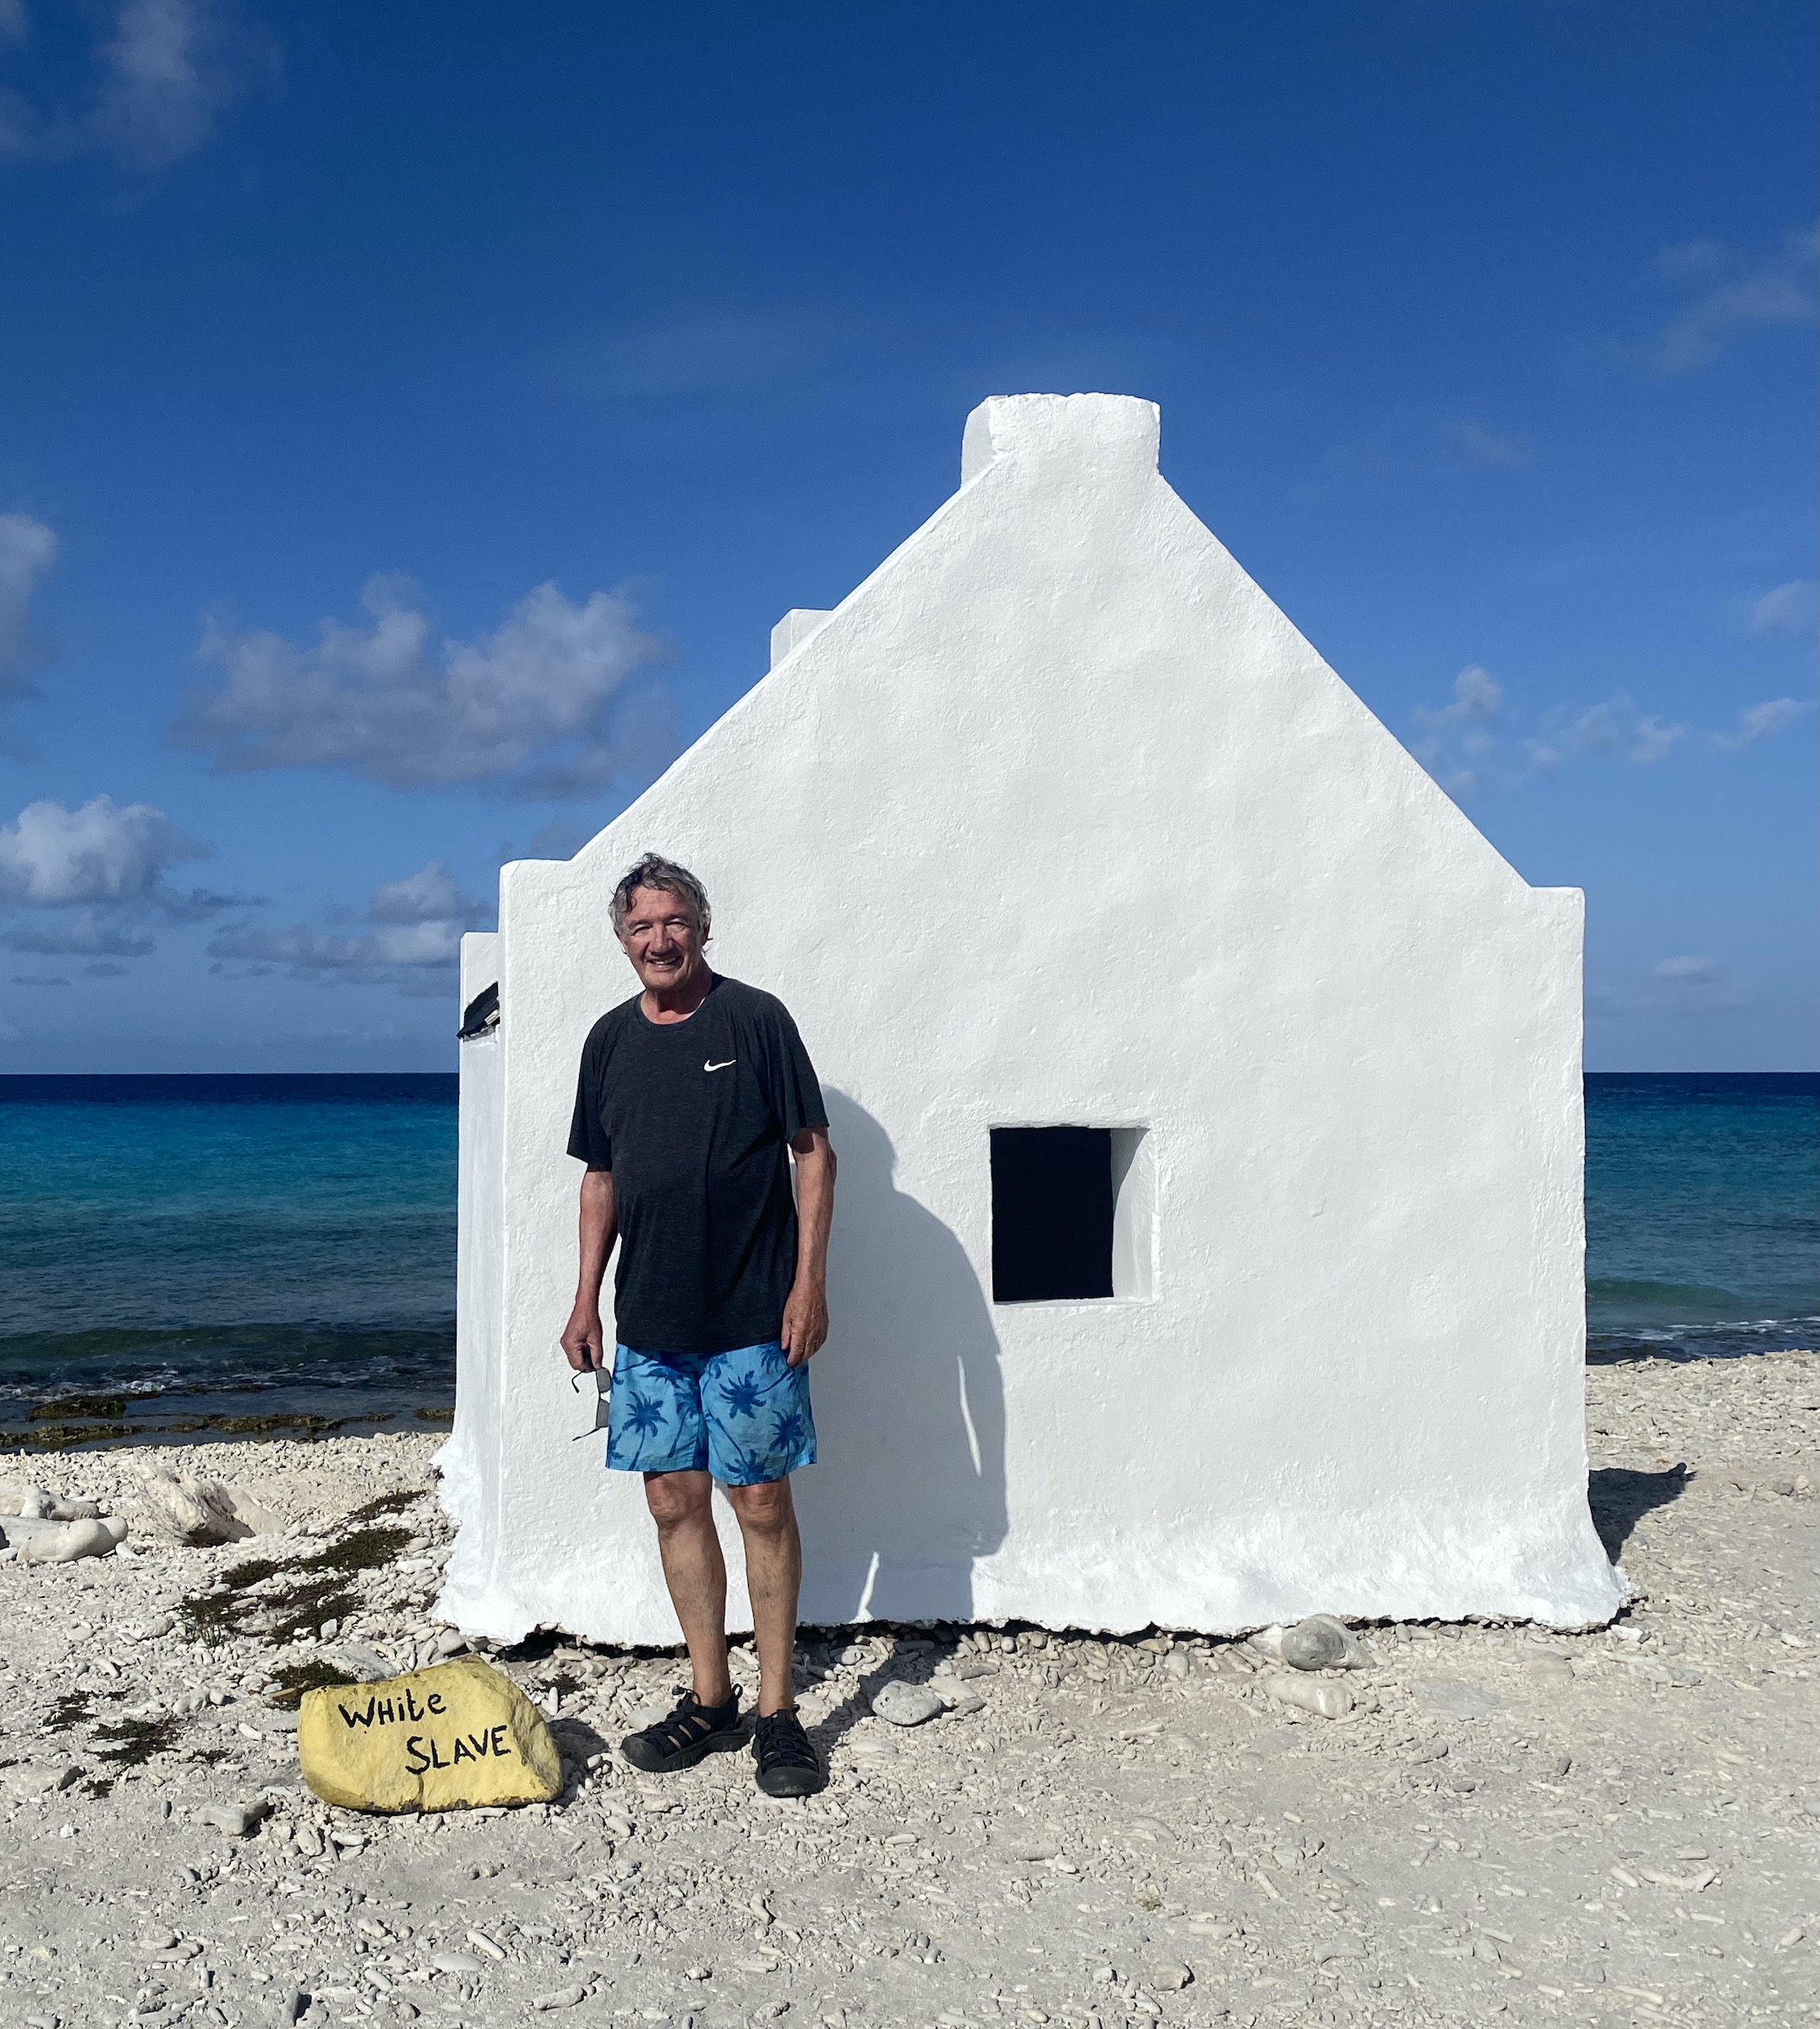 White Slave Hut, Bonaire